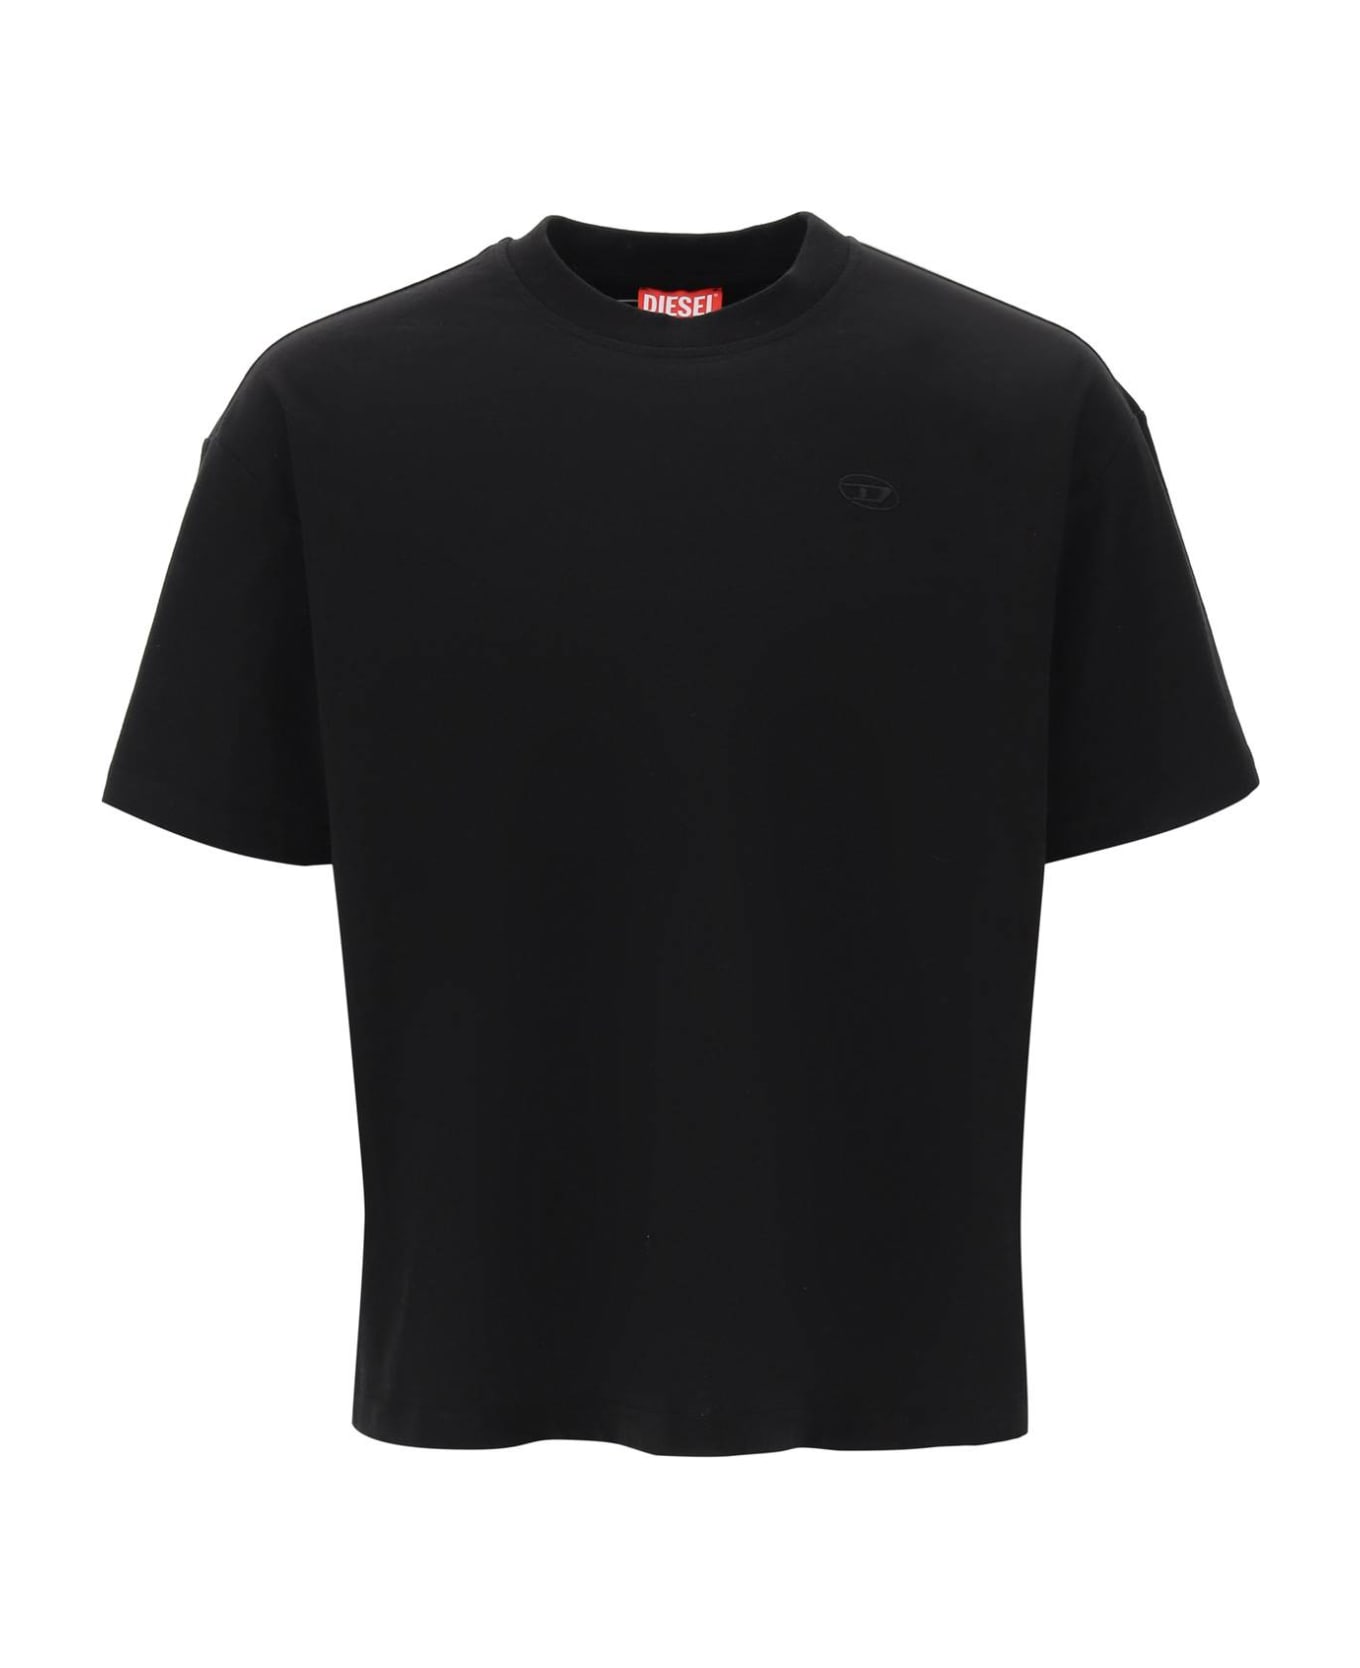 Diesel 't-boggy Megoval-d' T-shirt - Black